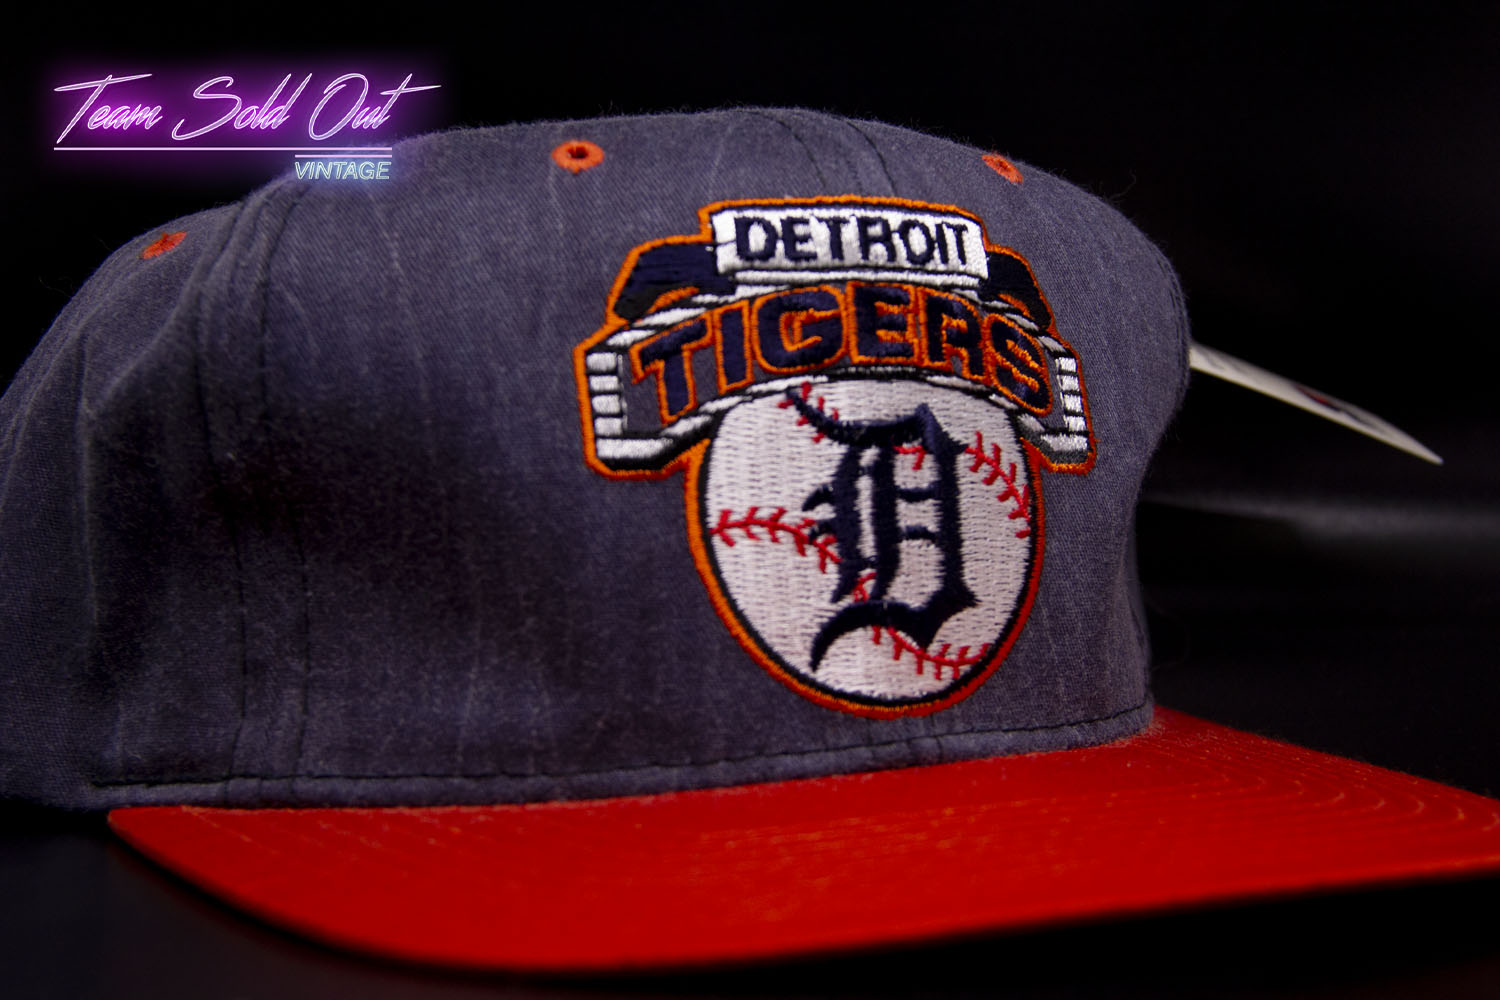 Vintage Starter Detroit Tigers Snapback Hat MLB